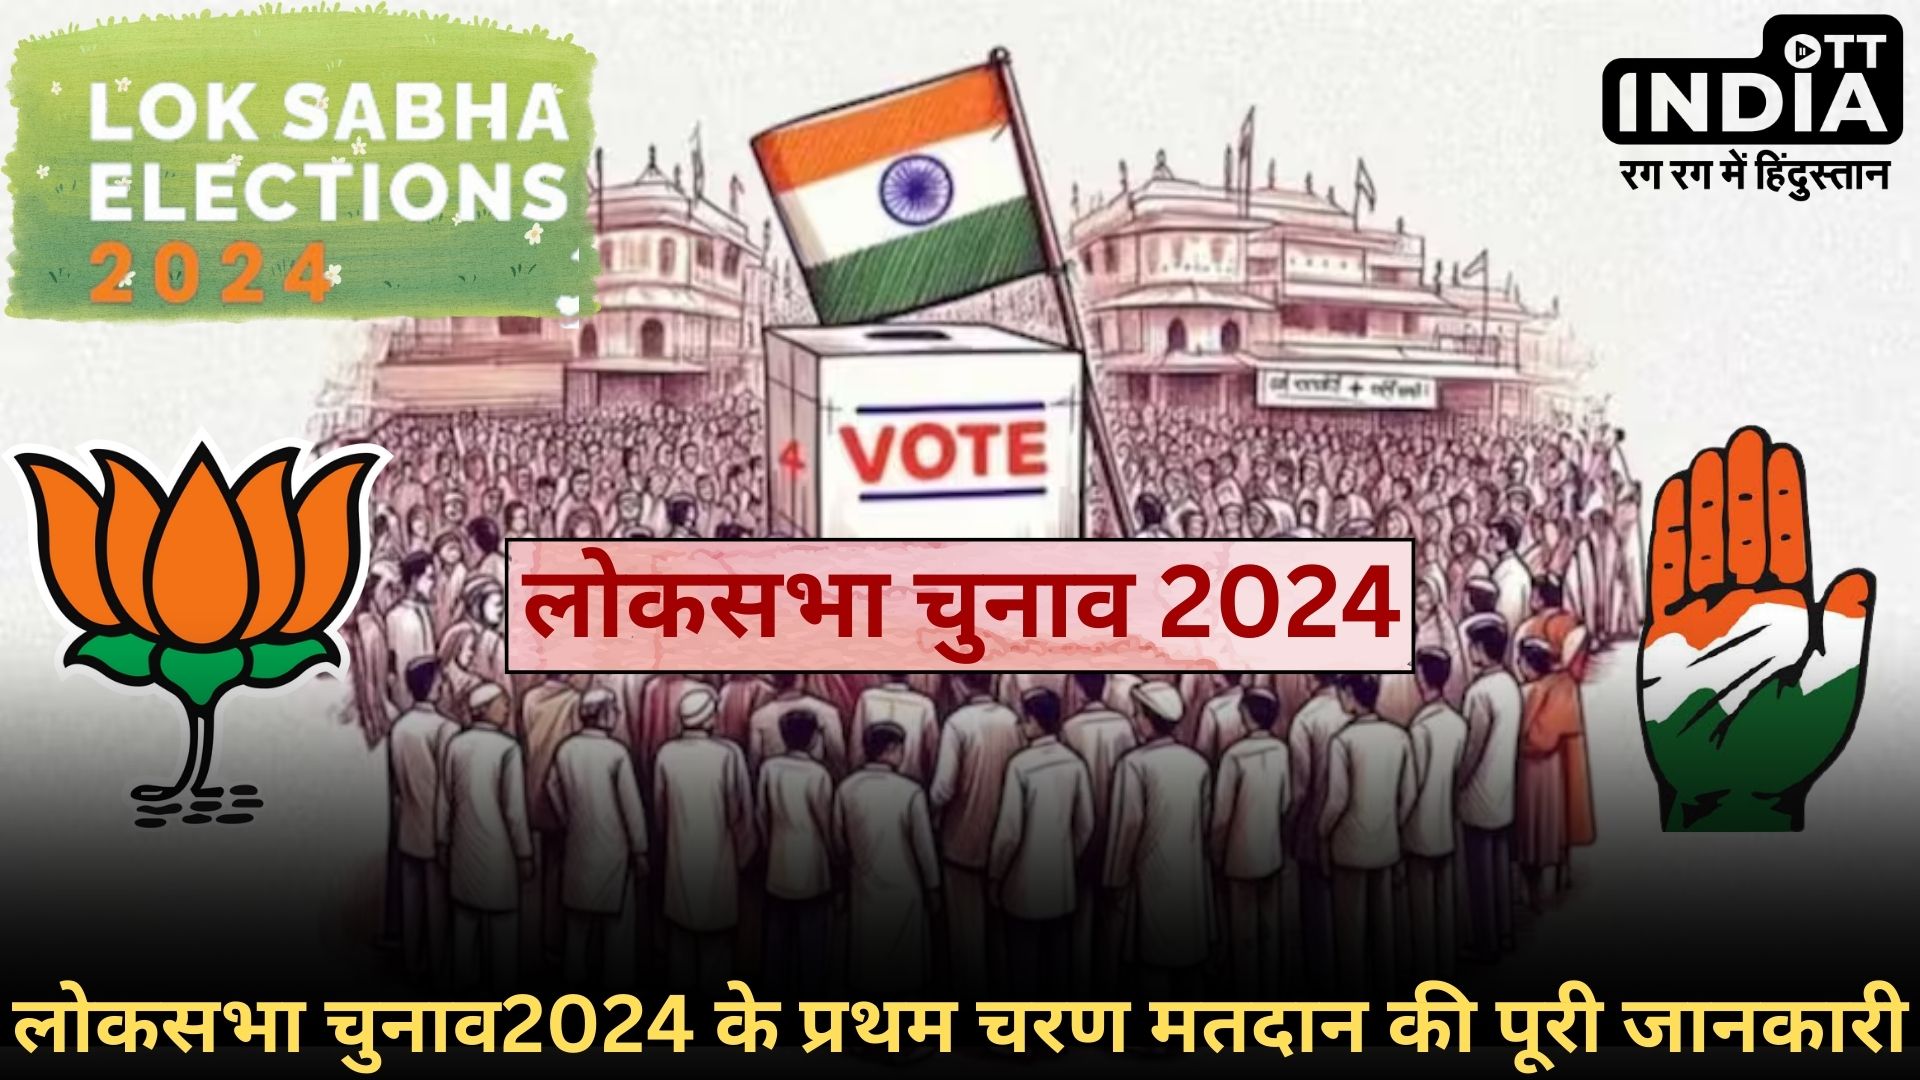 First Faze Loksabha Election2024: लोकसभा चुनाव 2024 के पहले चरण मतदान की पूरी तस्वीर, 21 राज्यों की 102 सीटों का पूरा विवरण…